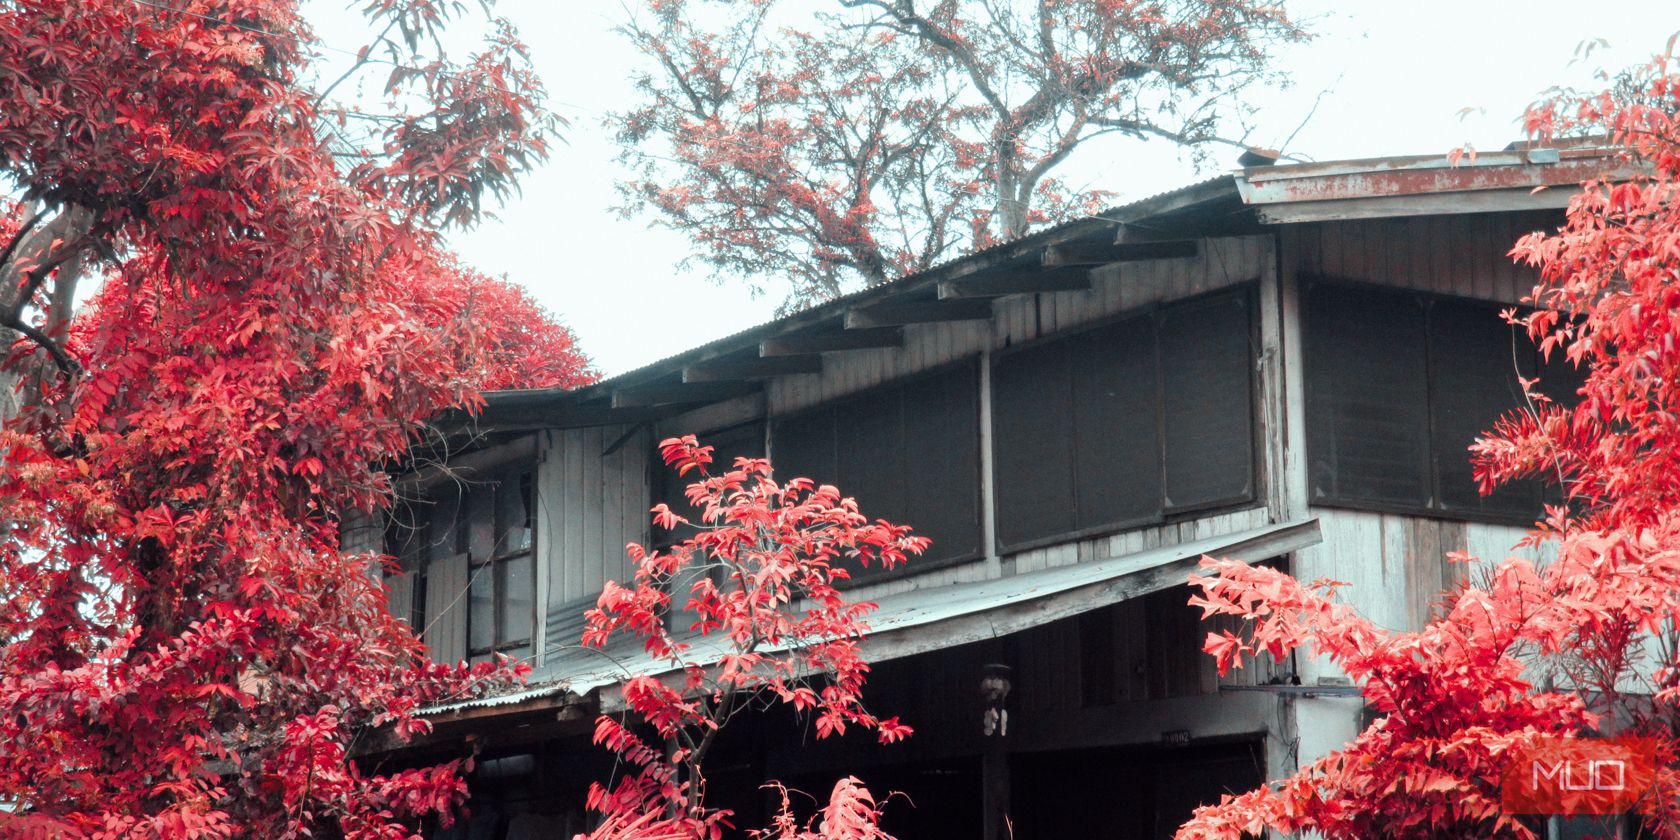 Hình ảnh ngôi nhà với hàng cây lá đỏ bao quanh